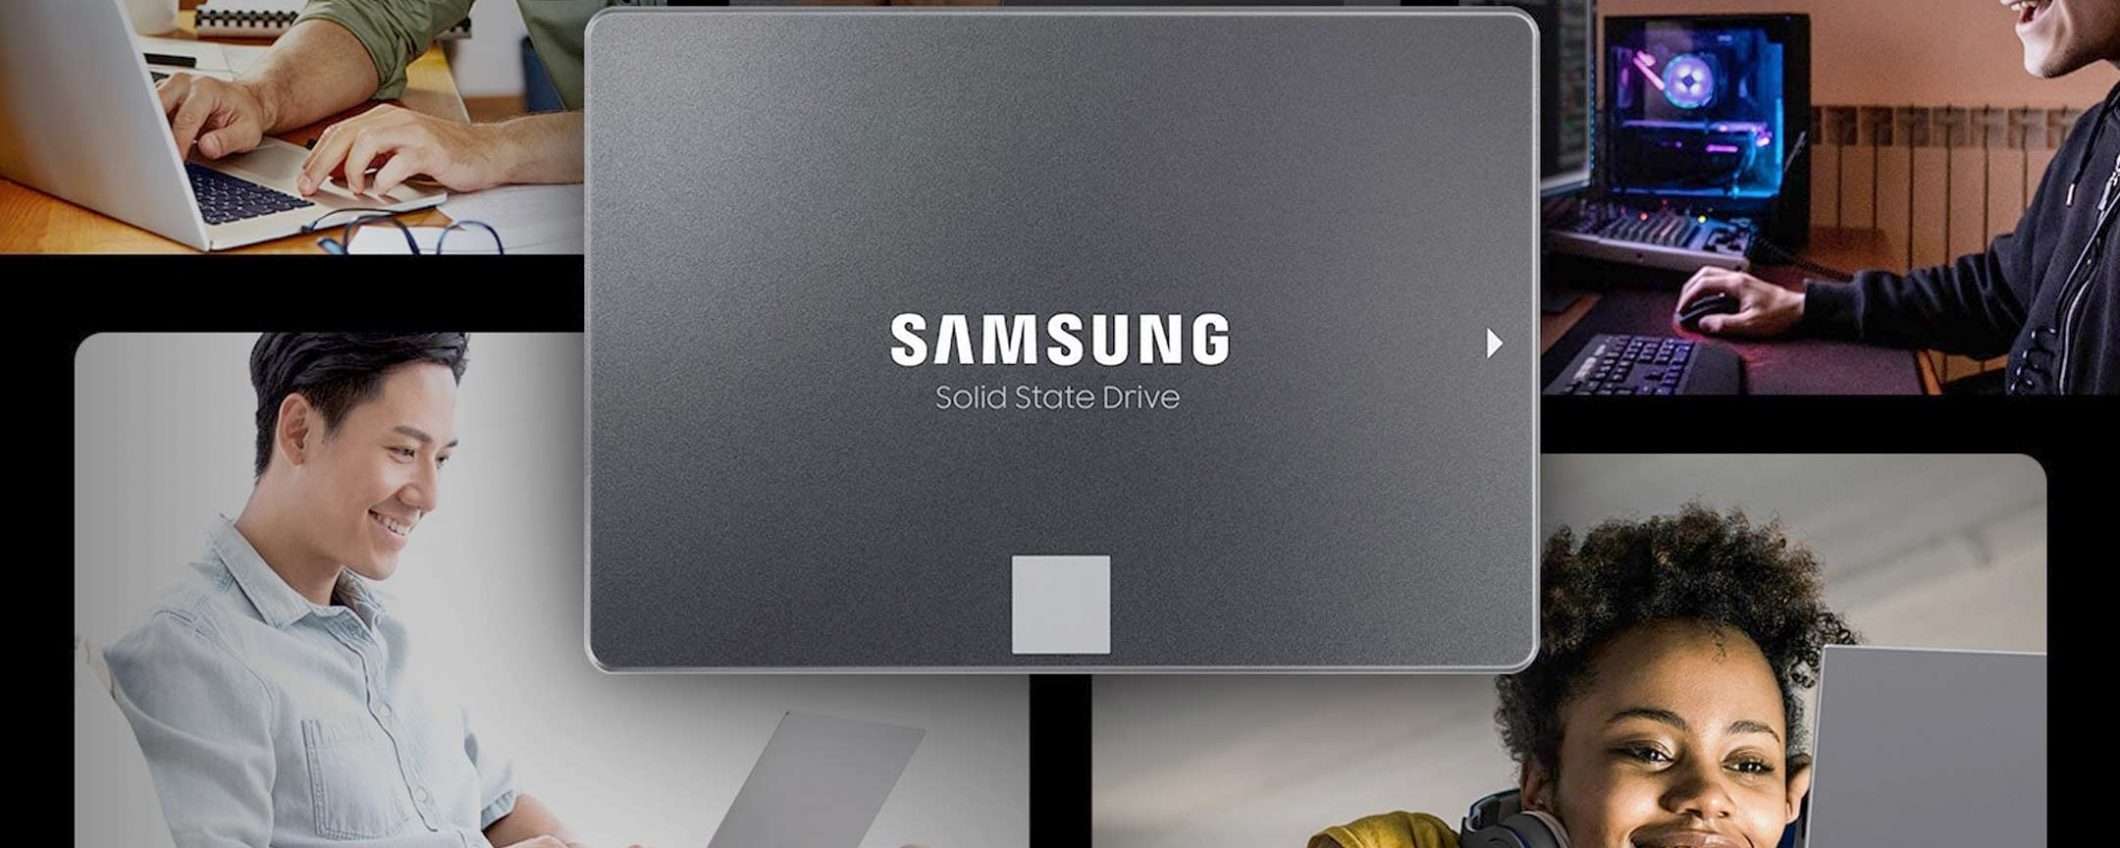 Samsung 870 EVO 250GB: la SSD oggi in FORTE SCONTO